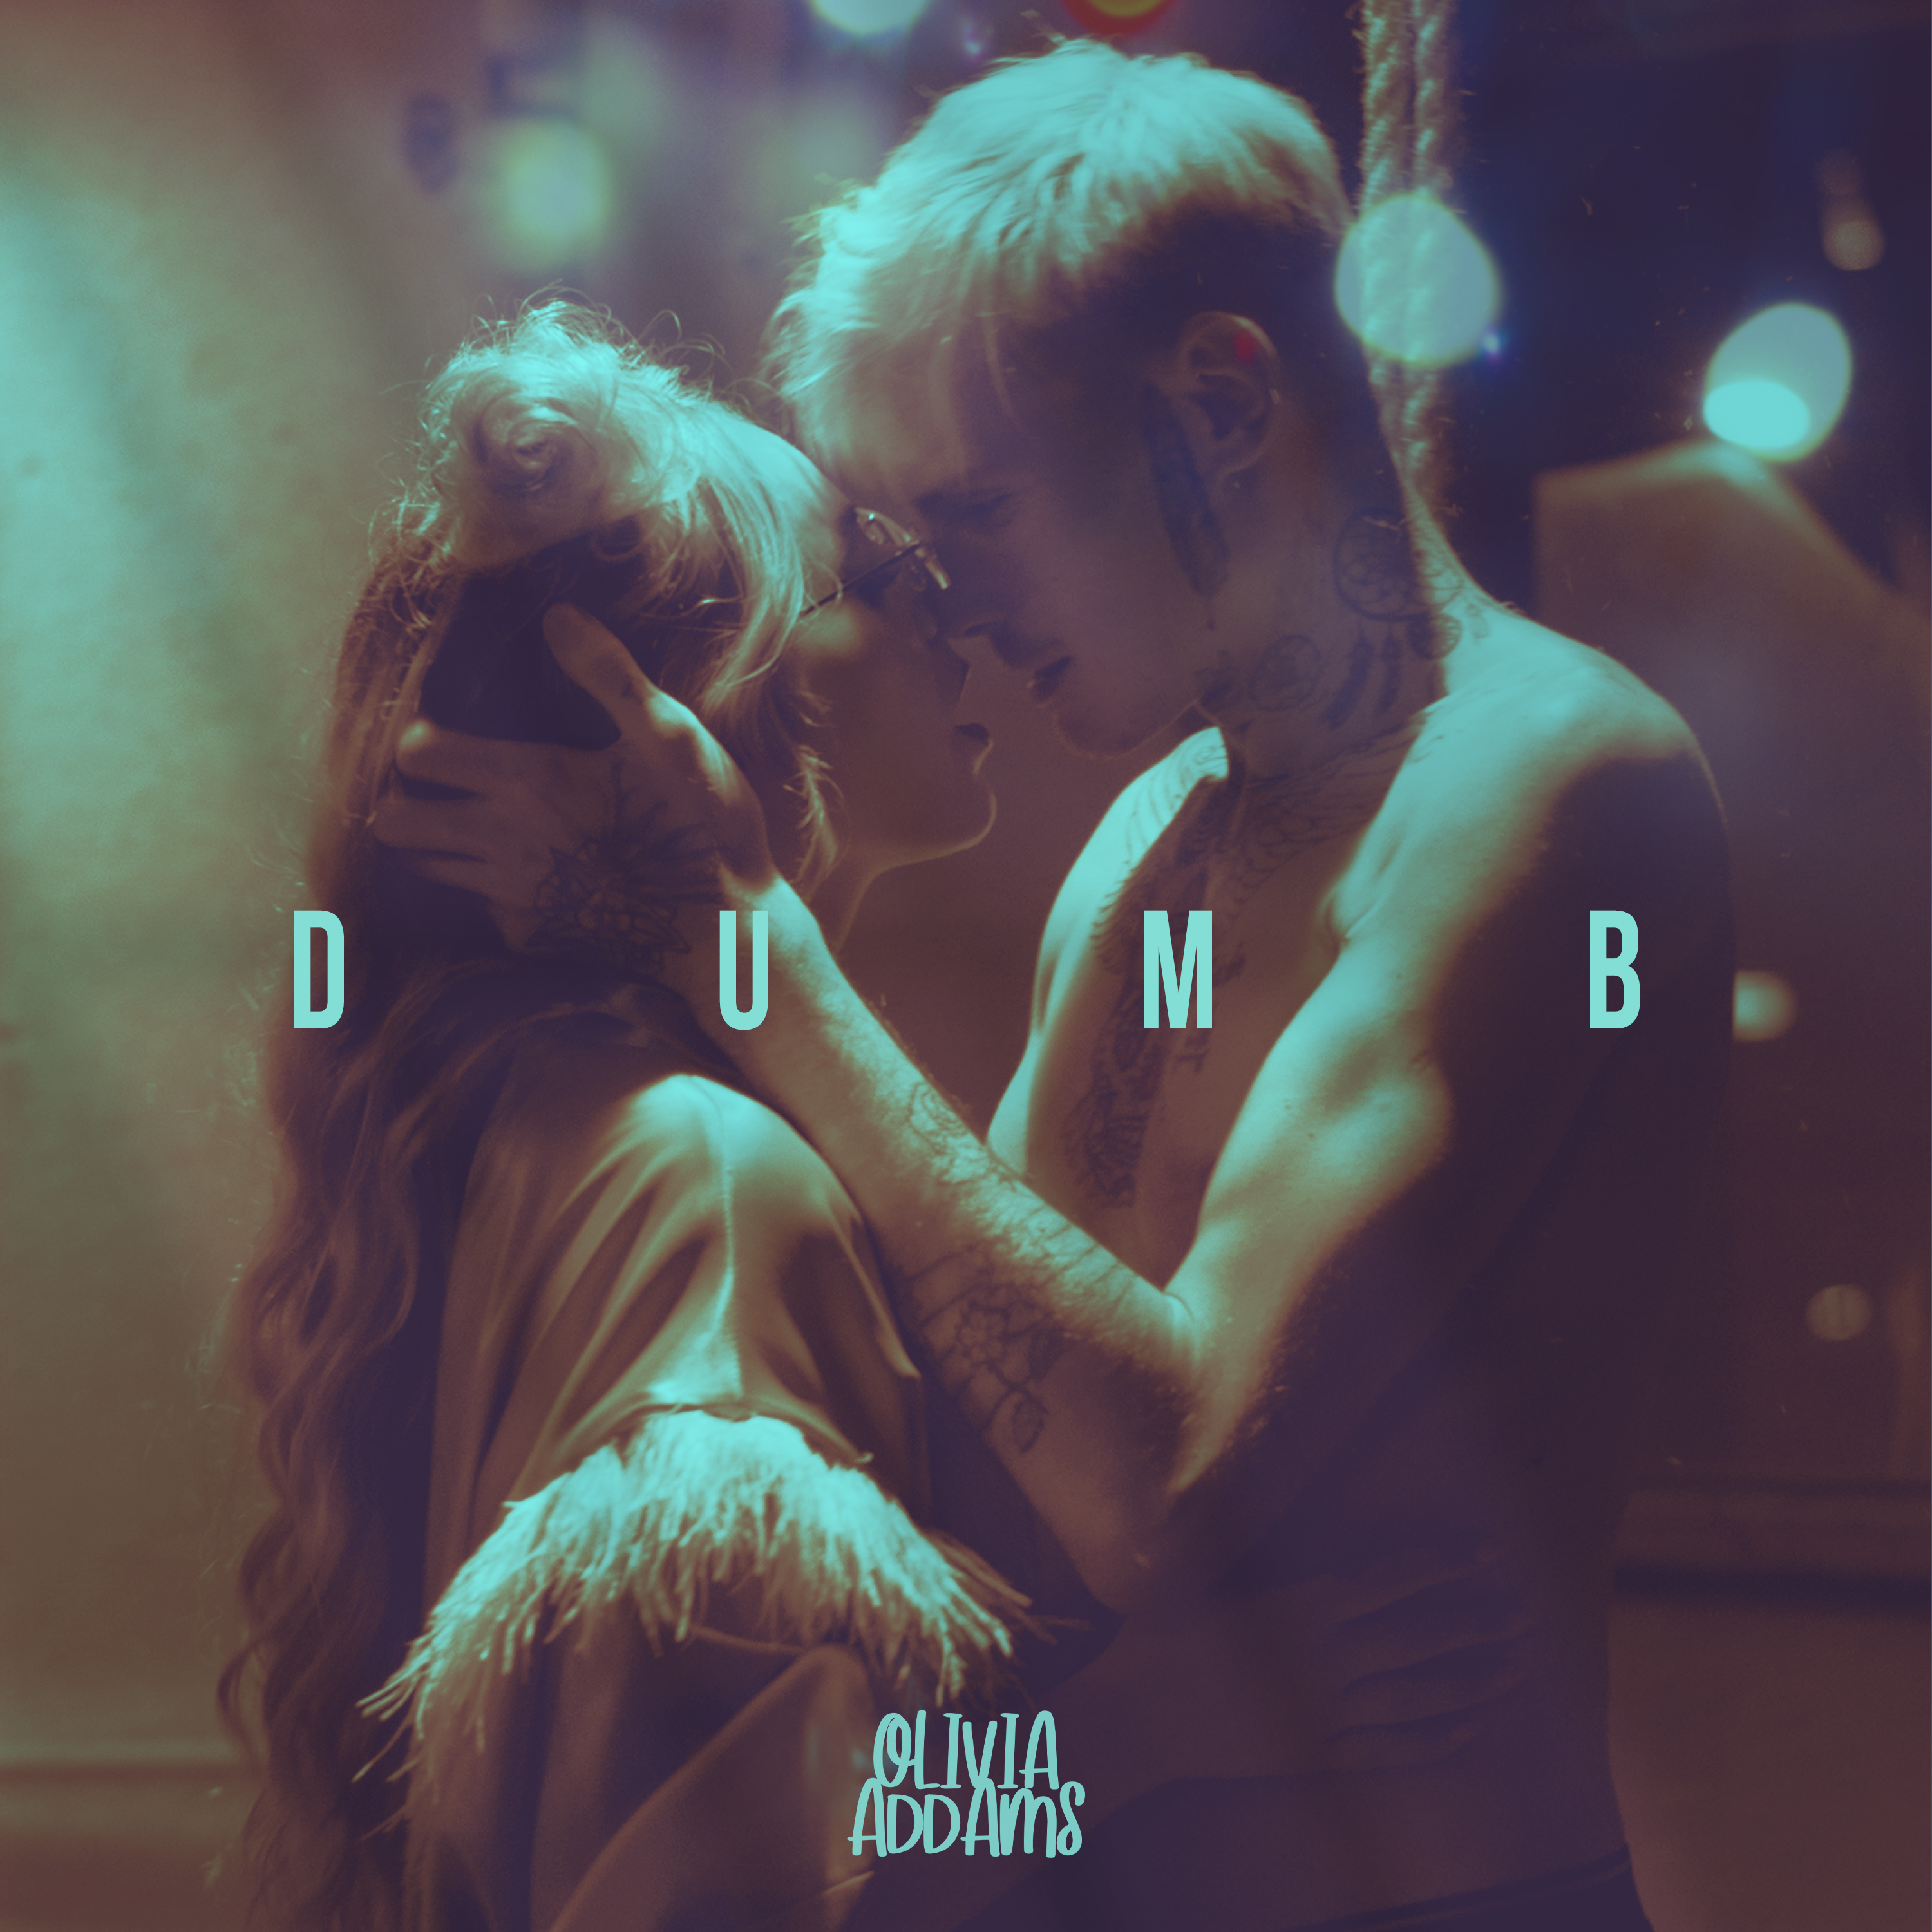 Olivia Addams prezentuje „Dumb” - świeży powiew na popowej scenie muzycznej!